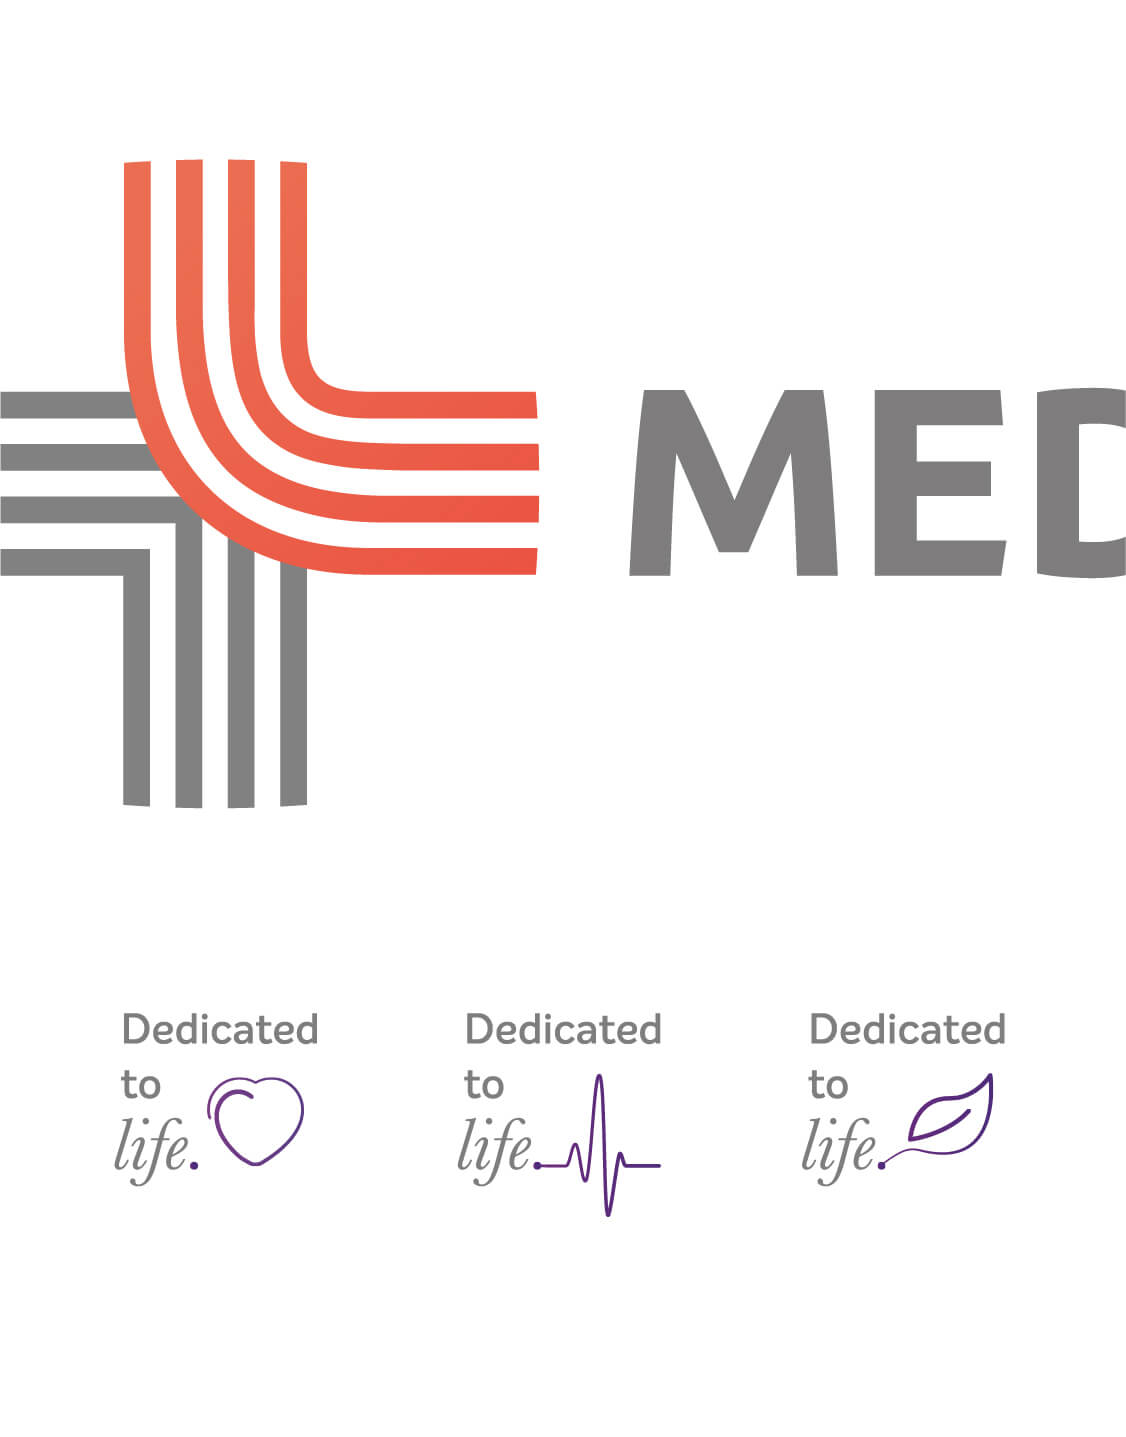 MEDANTA Medicity | Social Media Marketing | ODD LOOP Creative Agency | Delhi